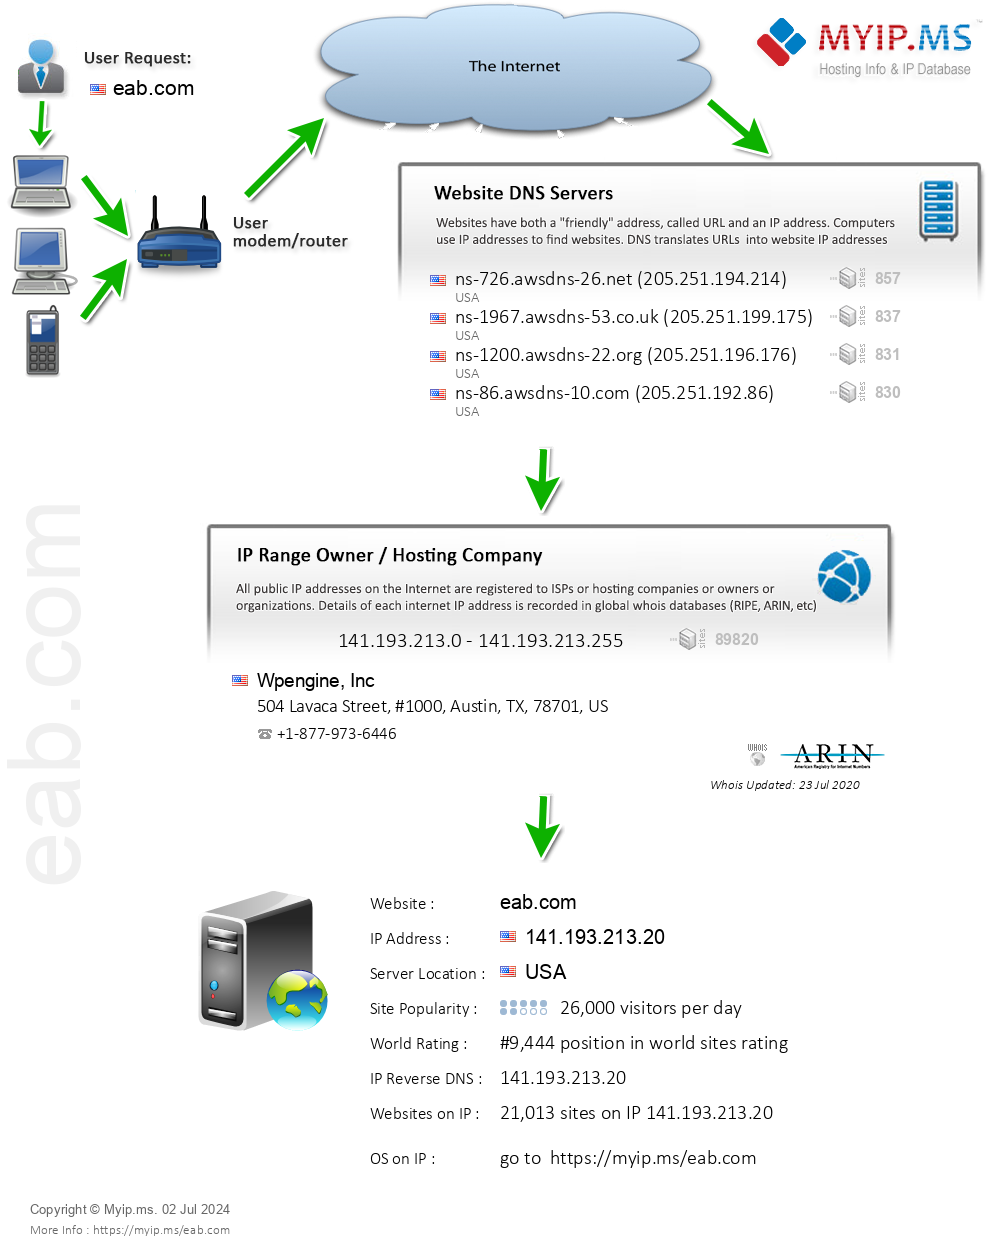 Eab.com - Website Hosting Visual IP Diagram